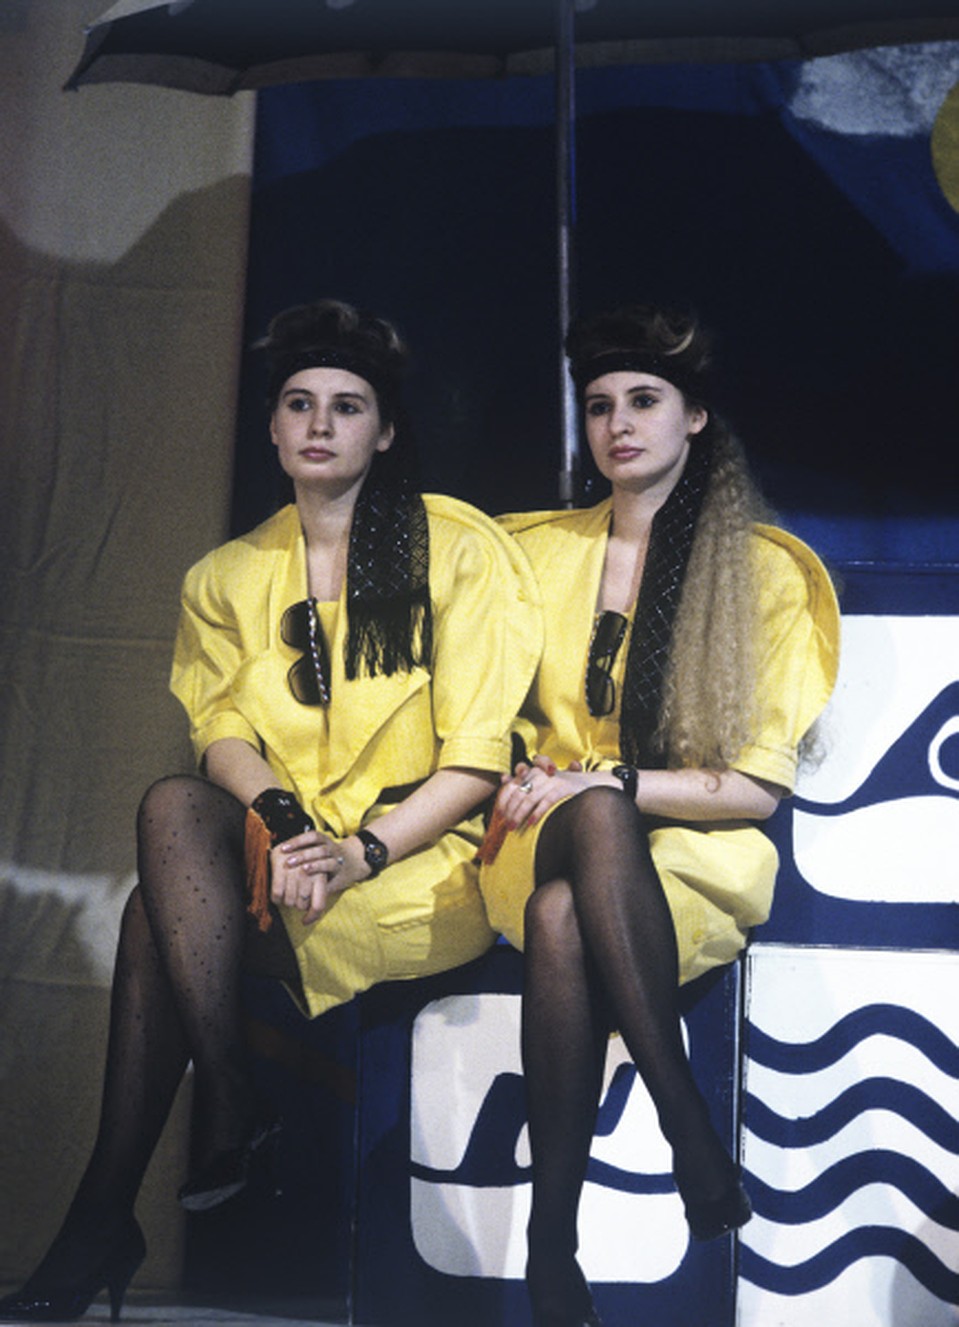 Победительницы конкурса Мы - близнецы- Юлия и Светлана Левреневы, 1990 год. Фото: РИА Новости